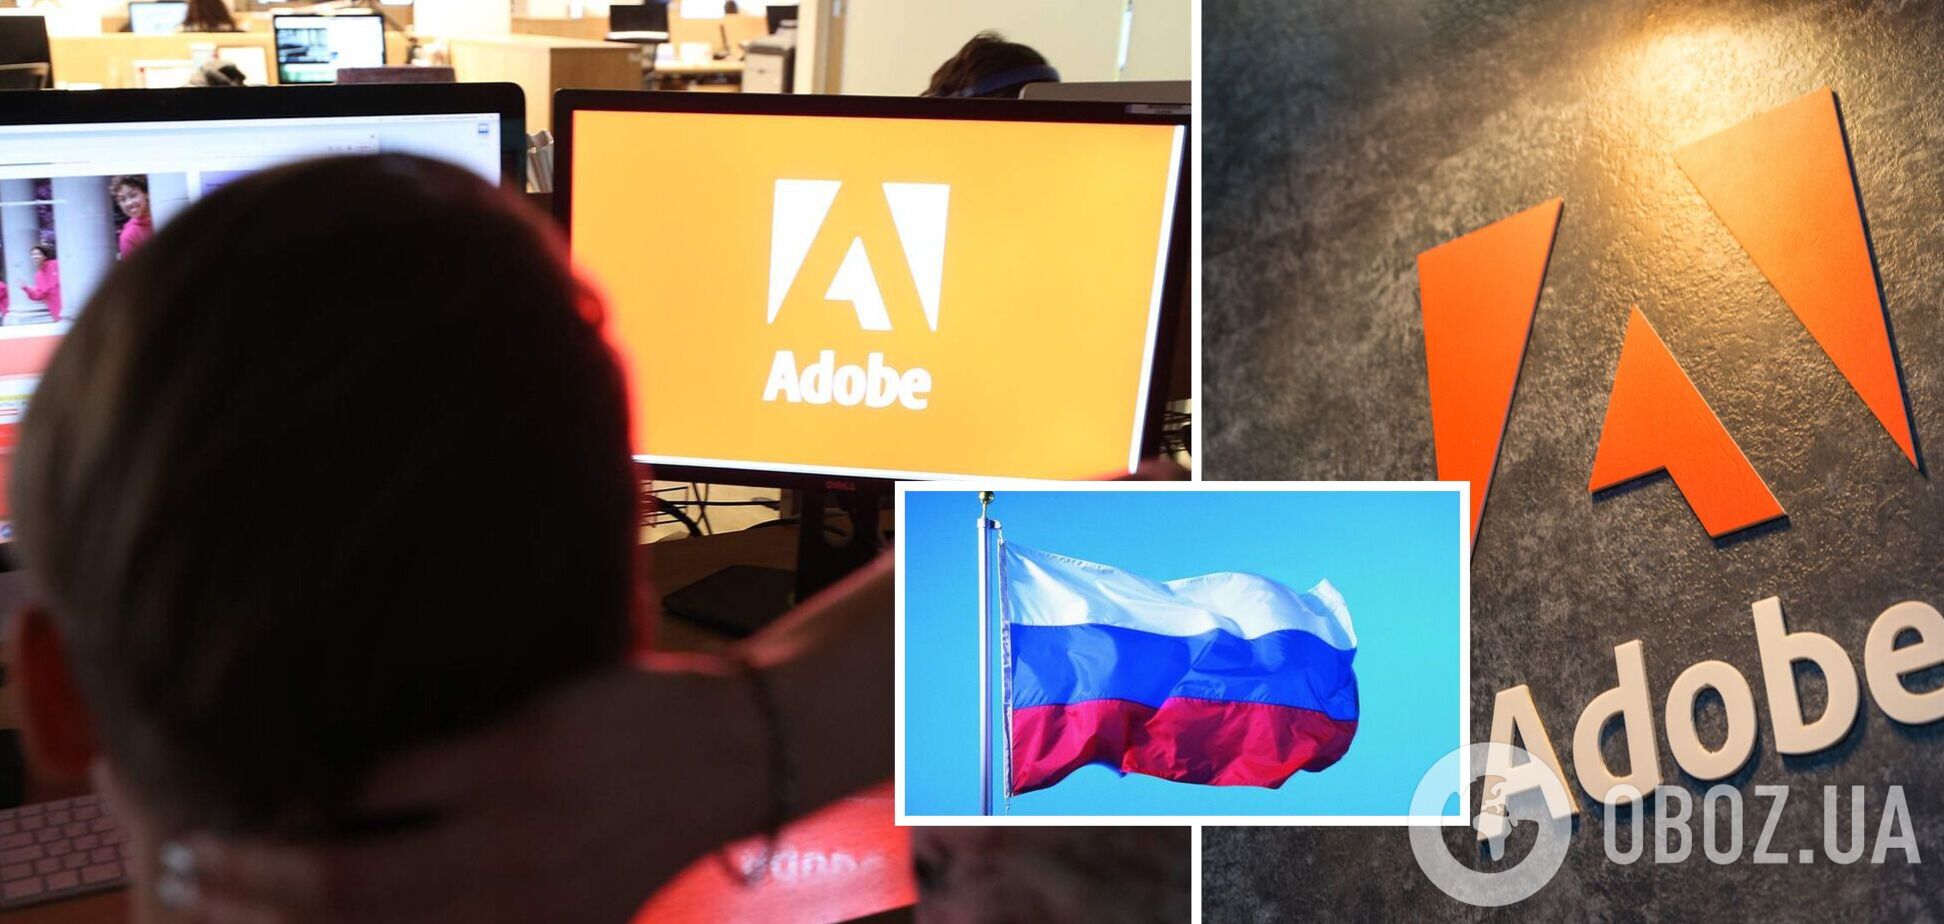 Adobe бесплатно продлевает лицензии пользователям из России